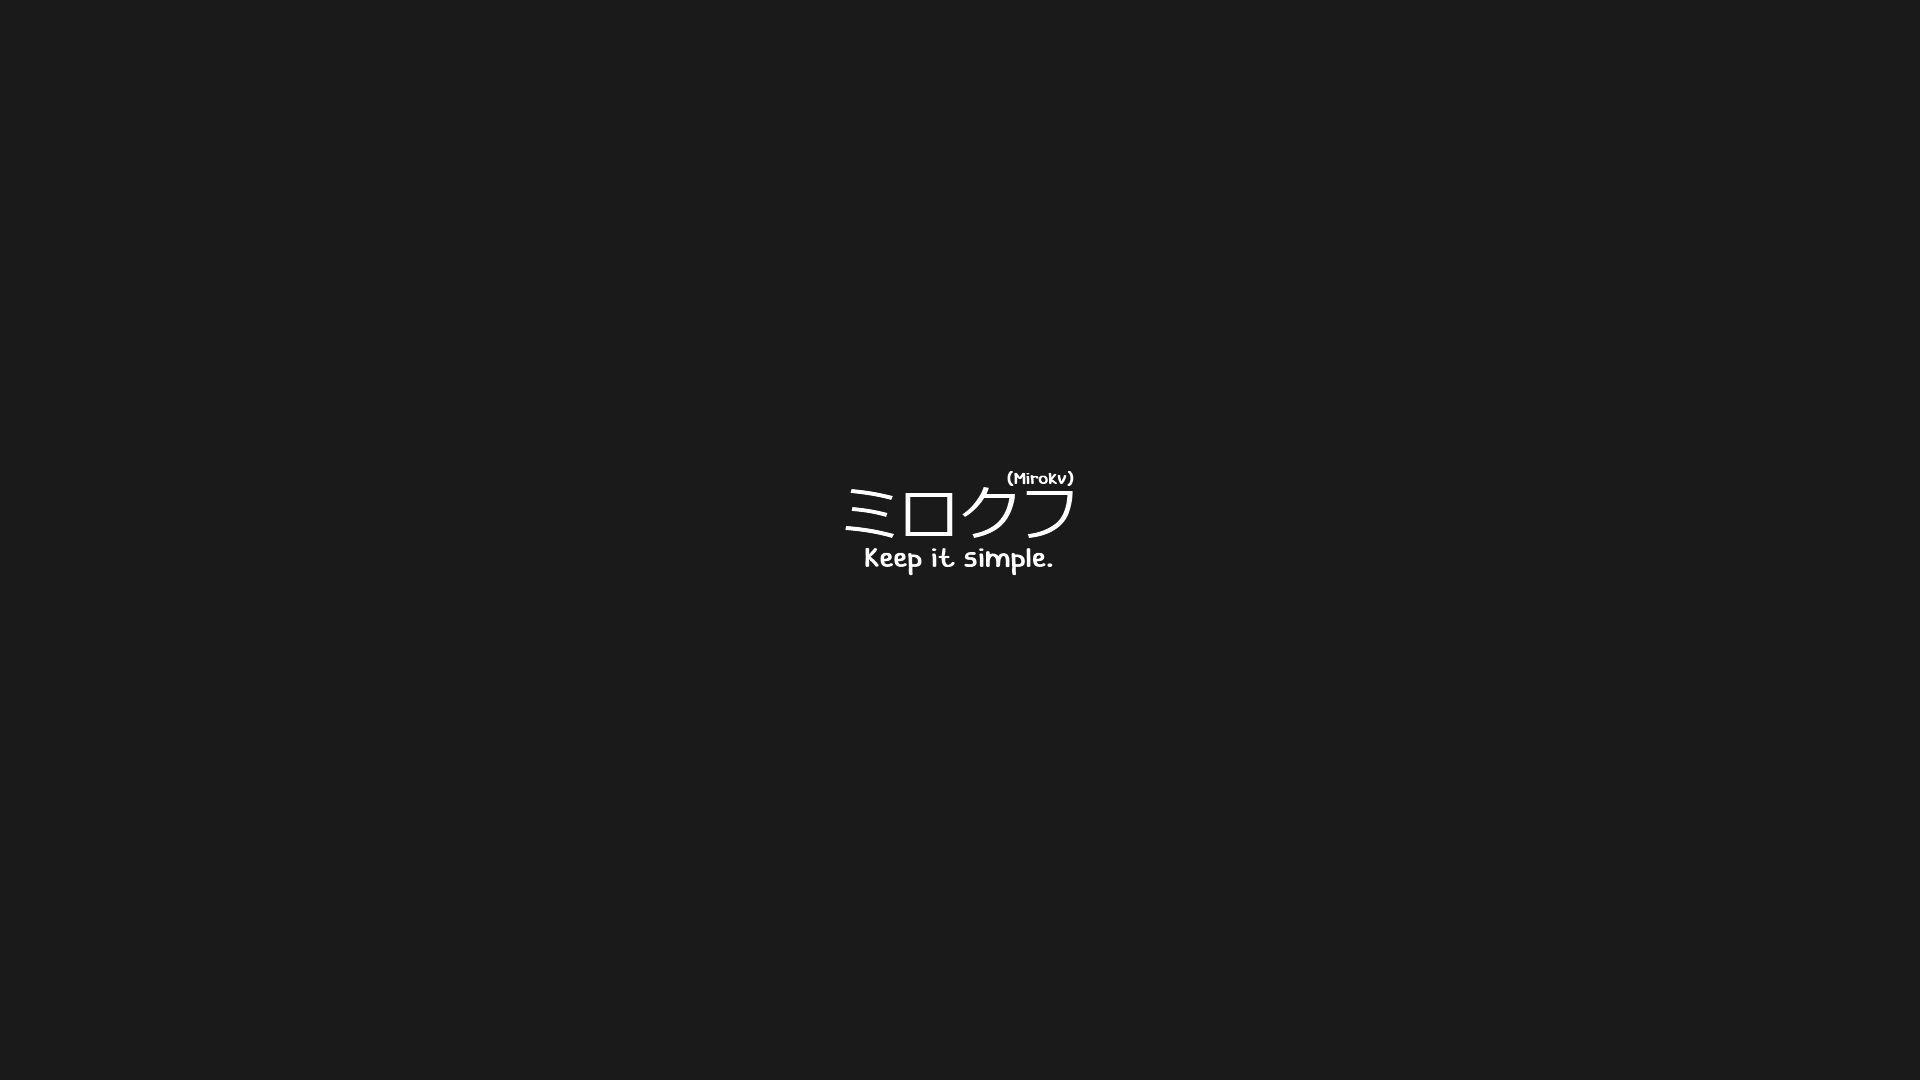 Japanese, Keep it simple, Translated, Simple background, Black